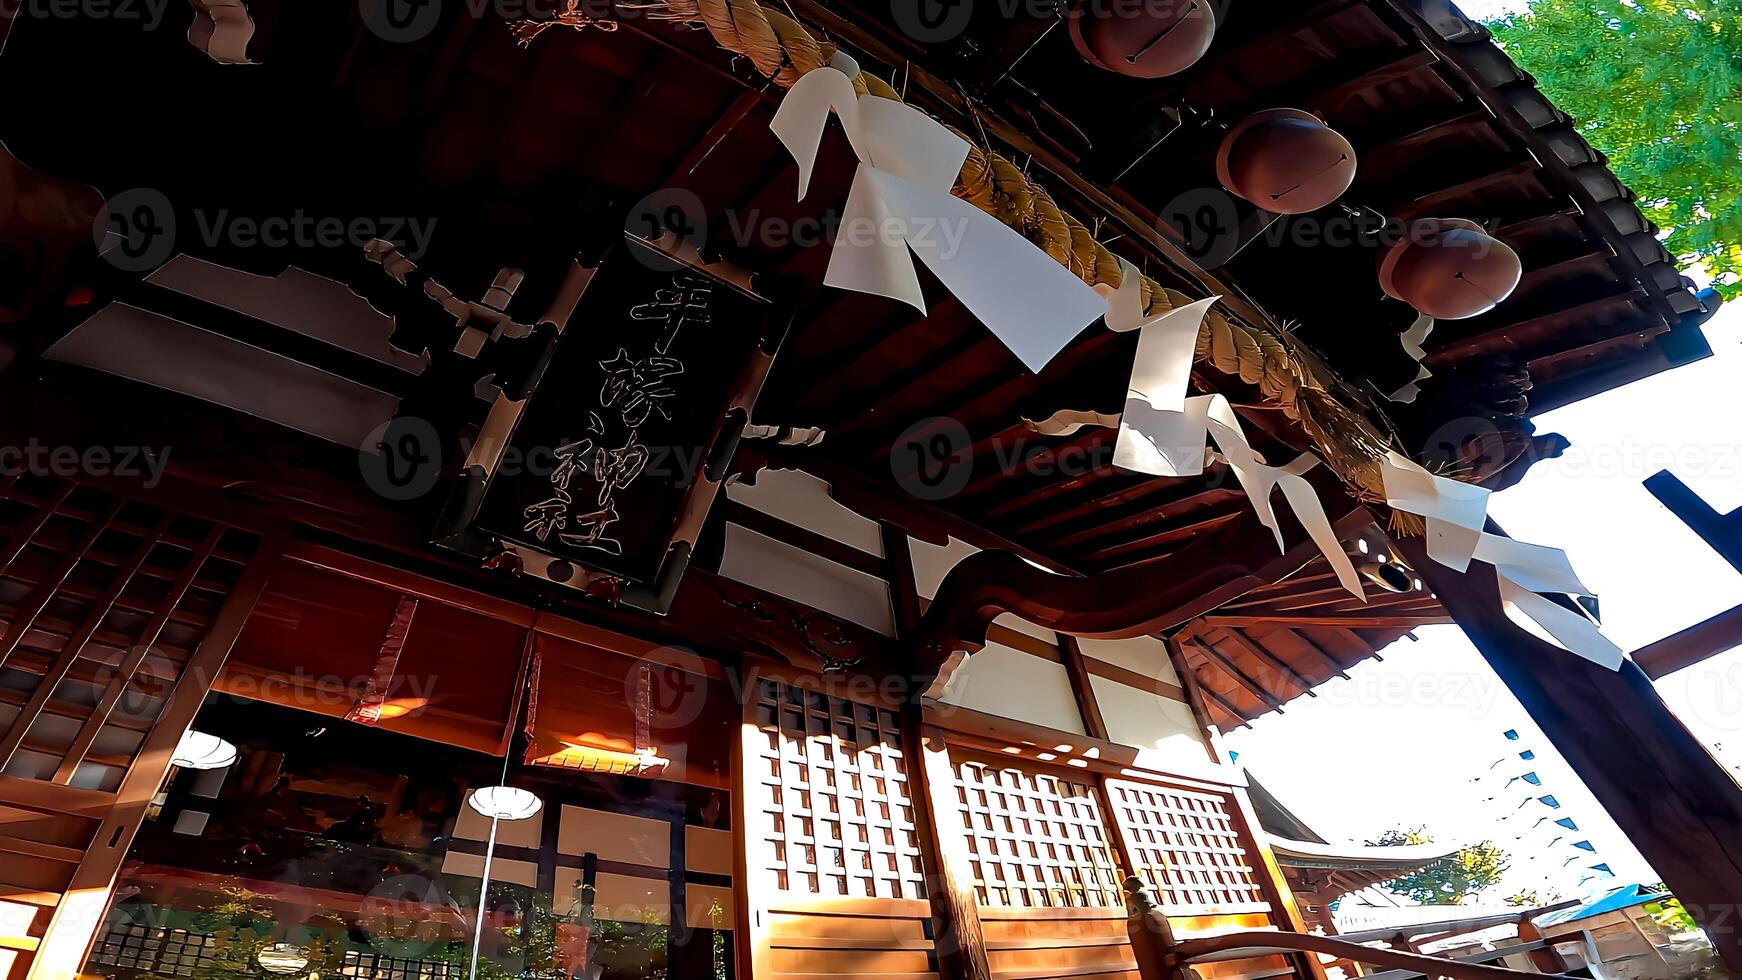 hiratsuka altaar, een altaar in kaminakazato, kita-ku, Tokio, Japan. het heeft geweest verankering hachiman taro minamoto Nee yoshiie, een held van de laat heian periode, en zijn twee jonger broers sinds 1118. foto